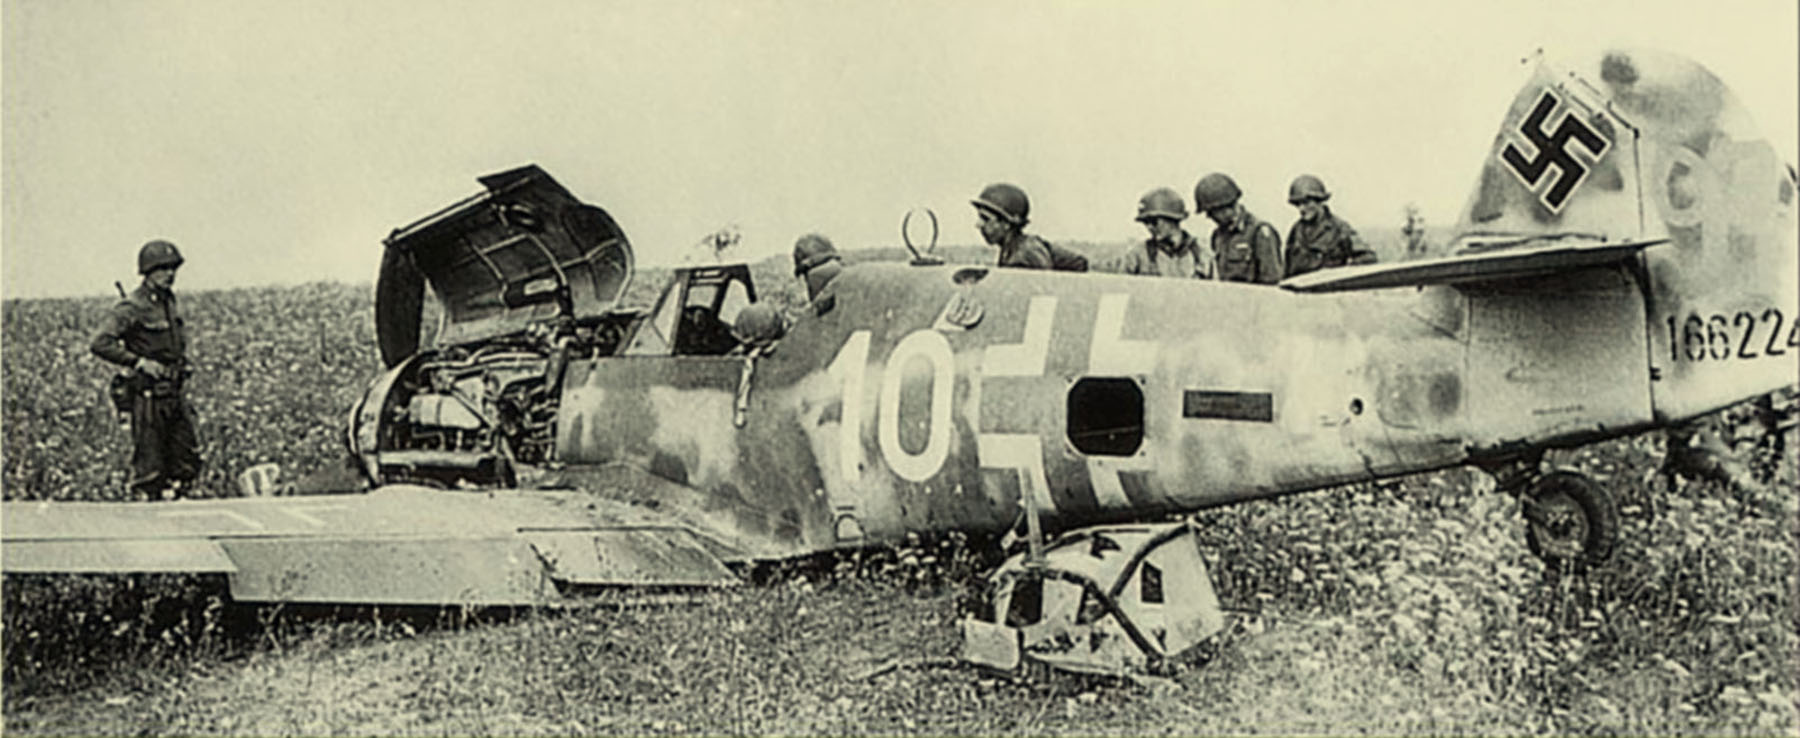 Messerschmitt Bf 109G6 Erla 4.JG3 White 10 WNr 166224 force landed Germany 28th Aug 1944 01